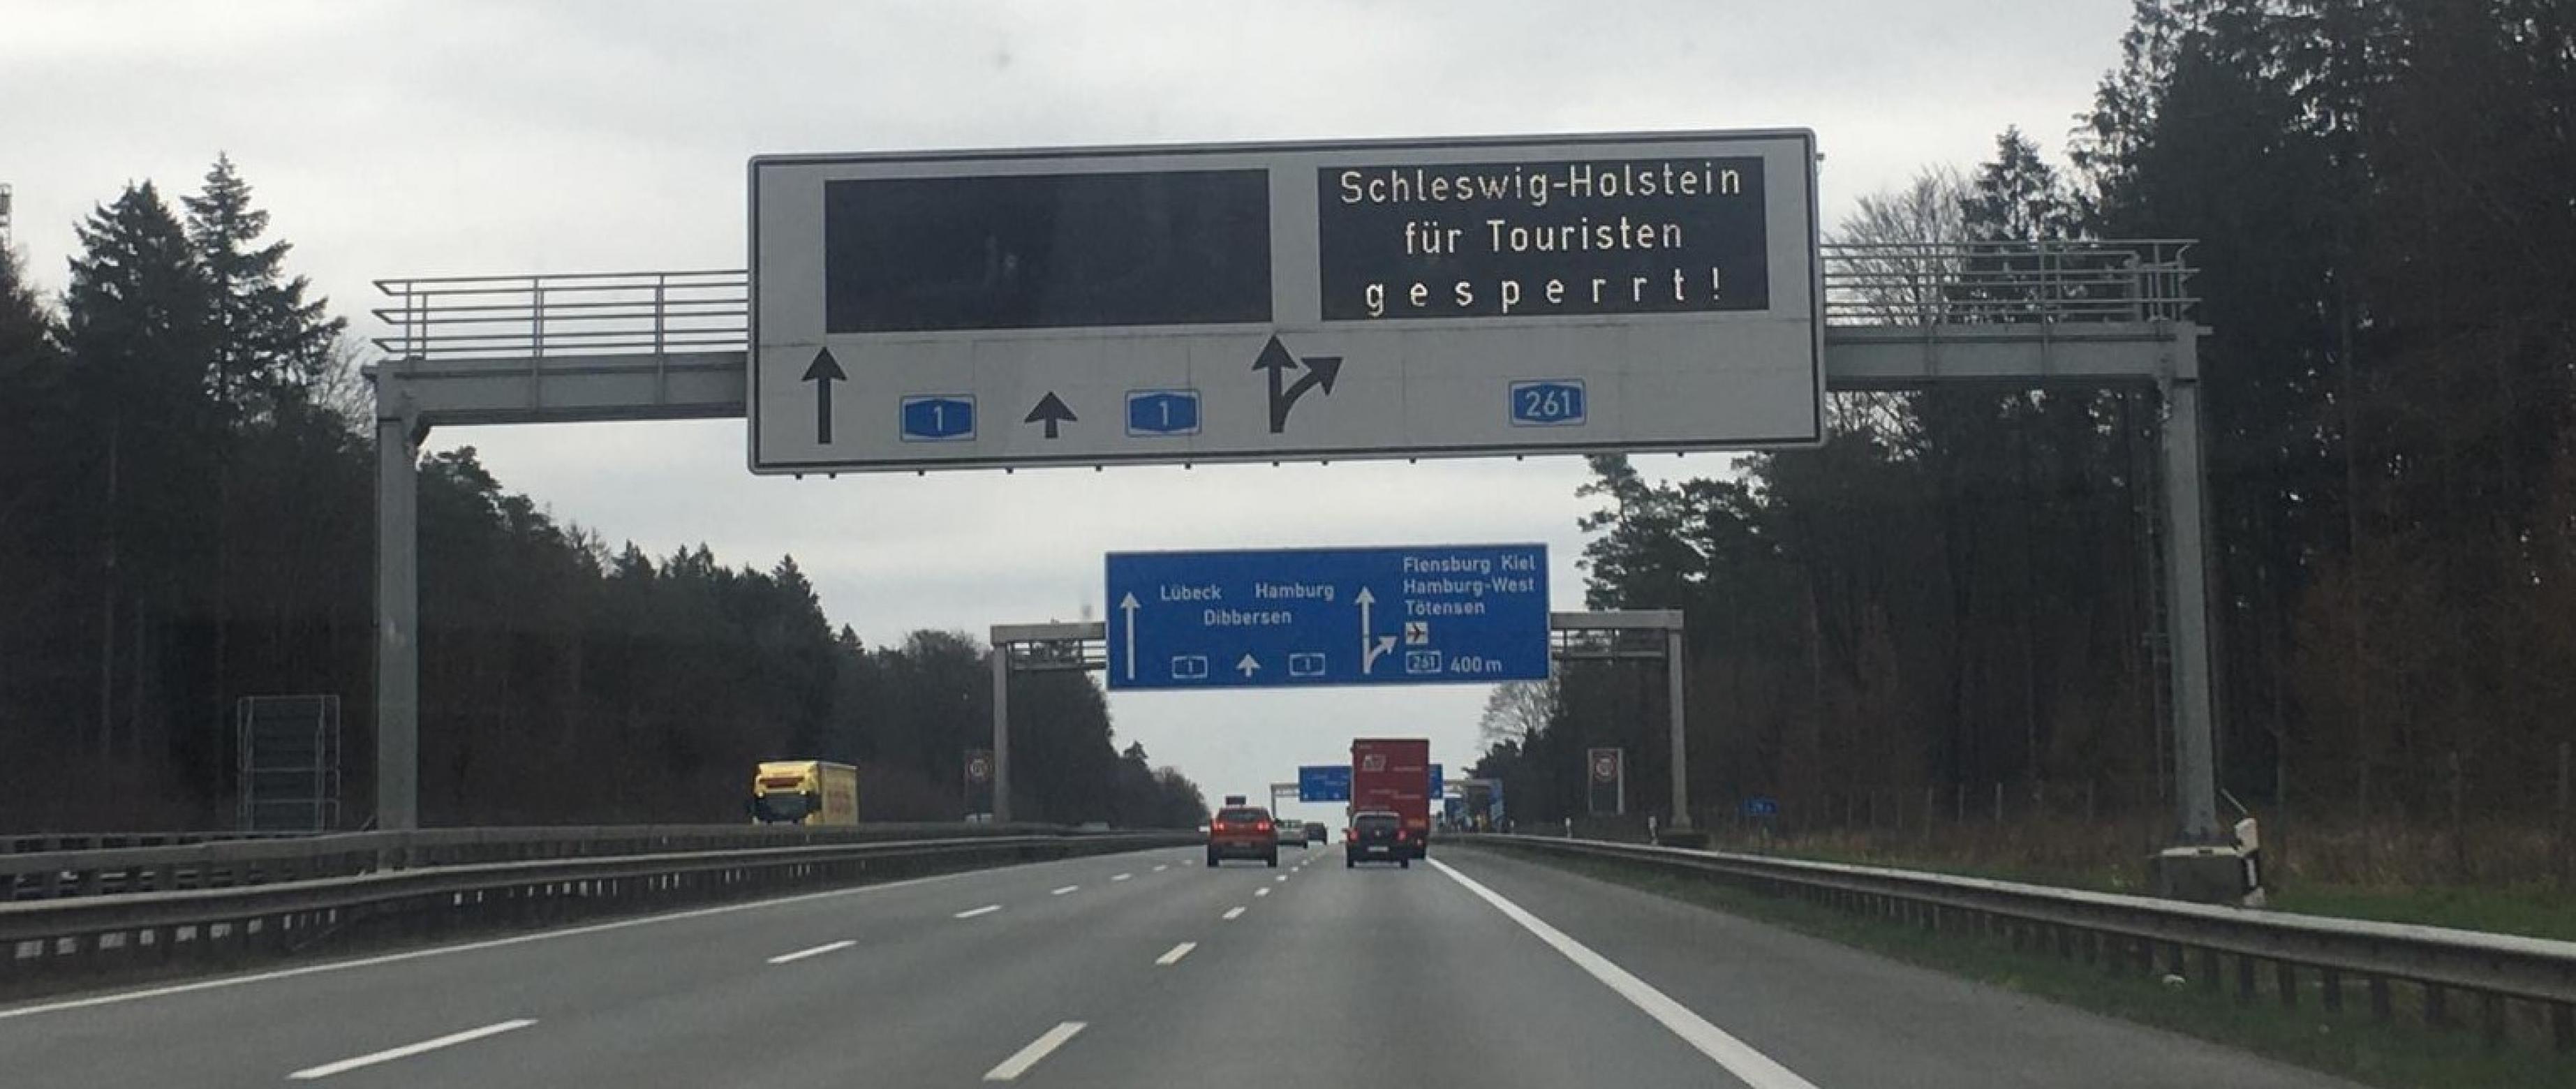 Ein Schild über der Autobahn zeigt folgende Aufschrift: „Schleswig-Holstein ist für Touristen gesperrt“.